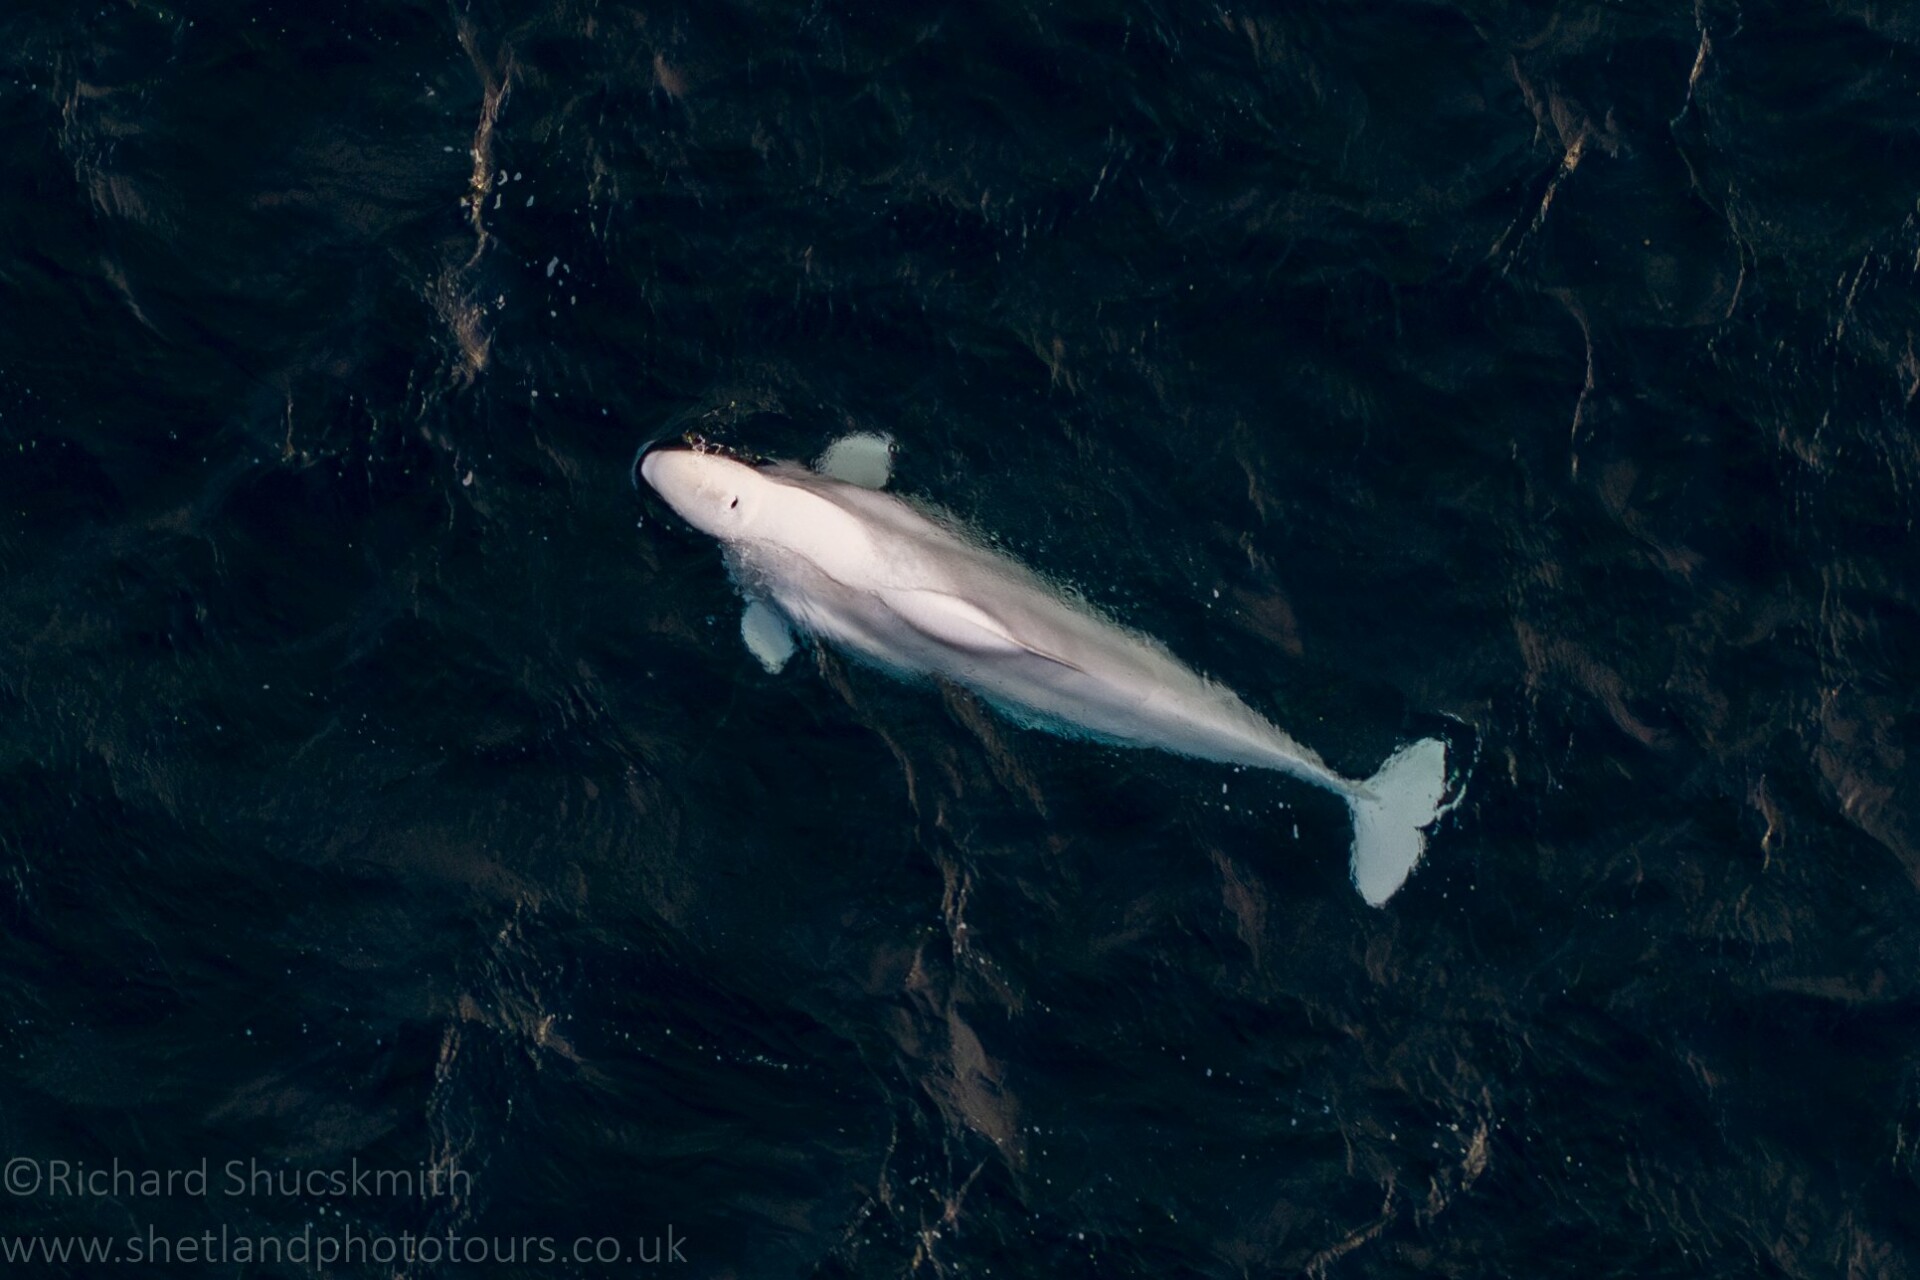 A búvár drónt használ fehér bálnaképek rögzítésére